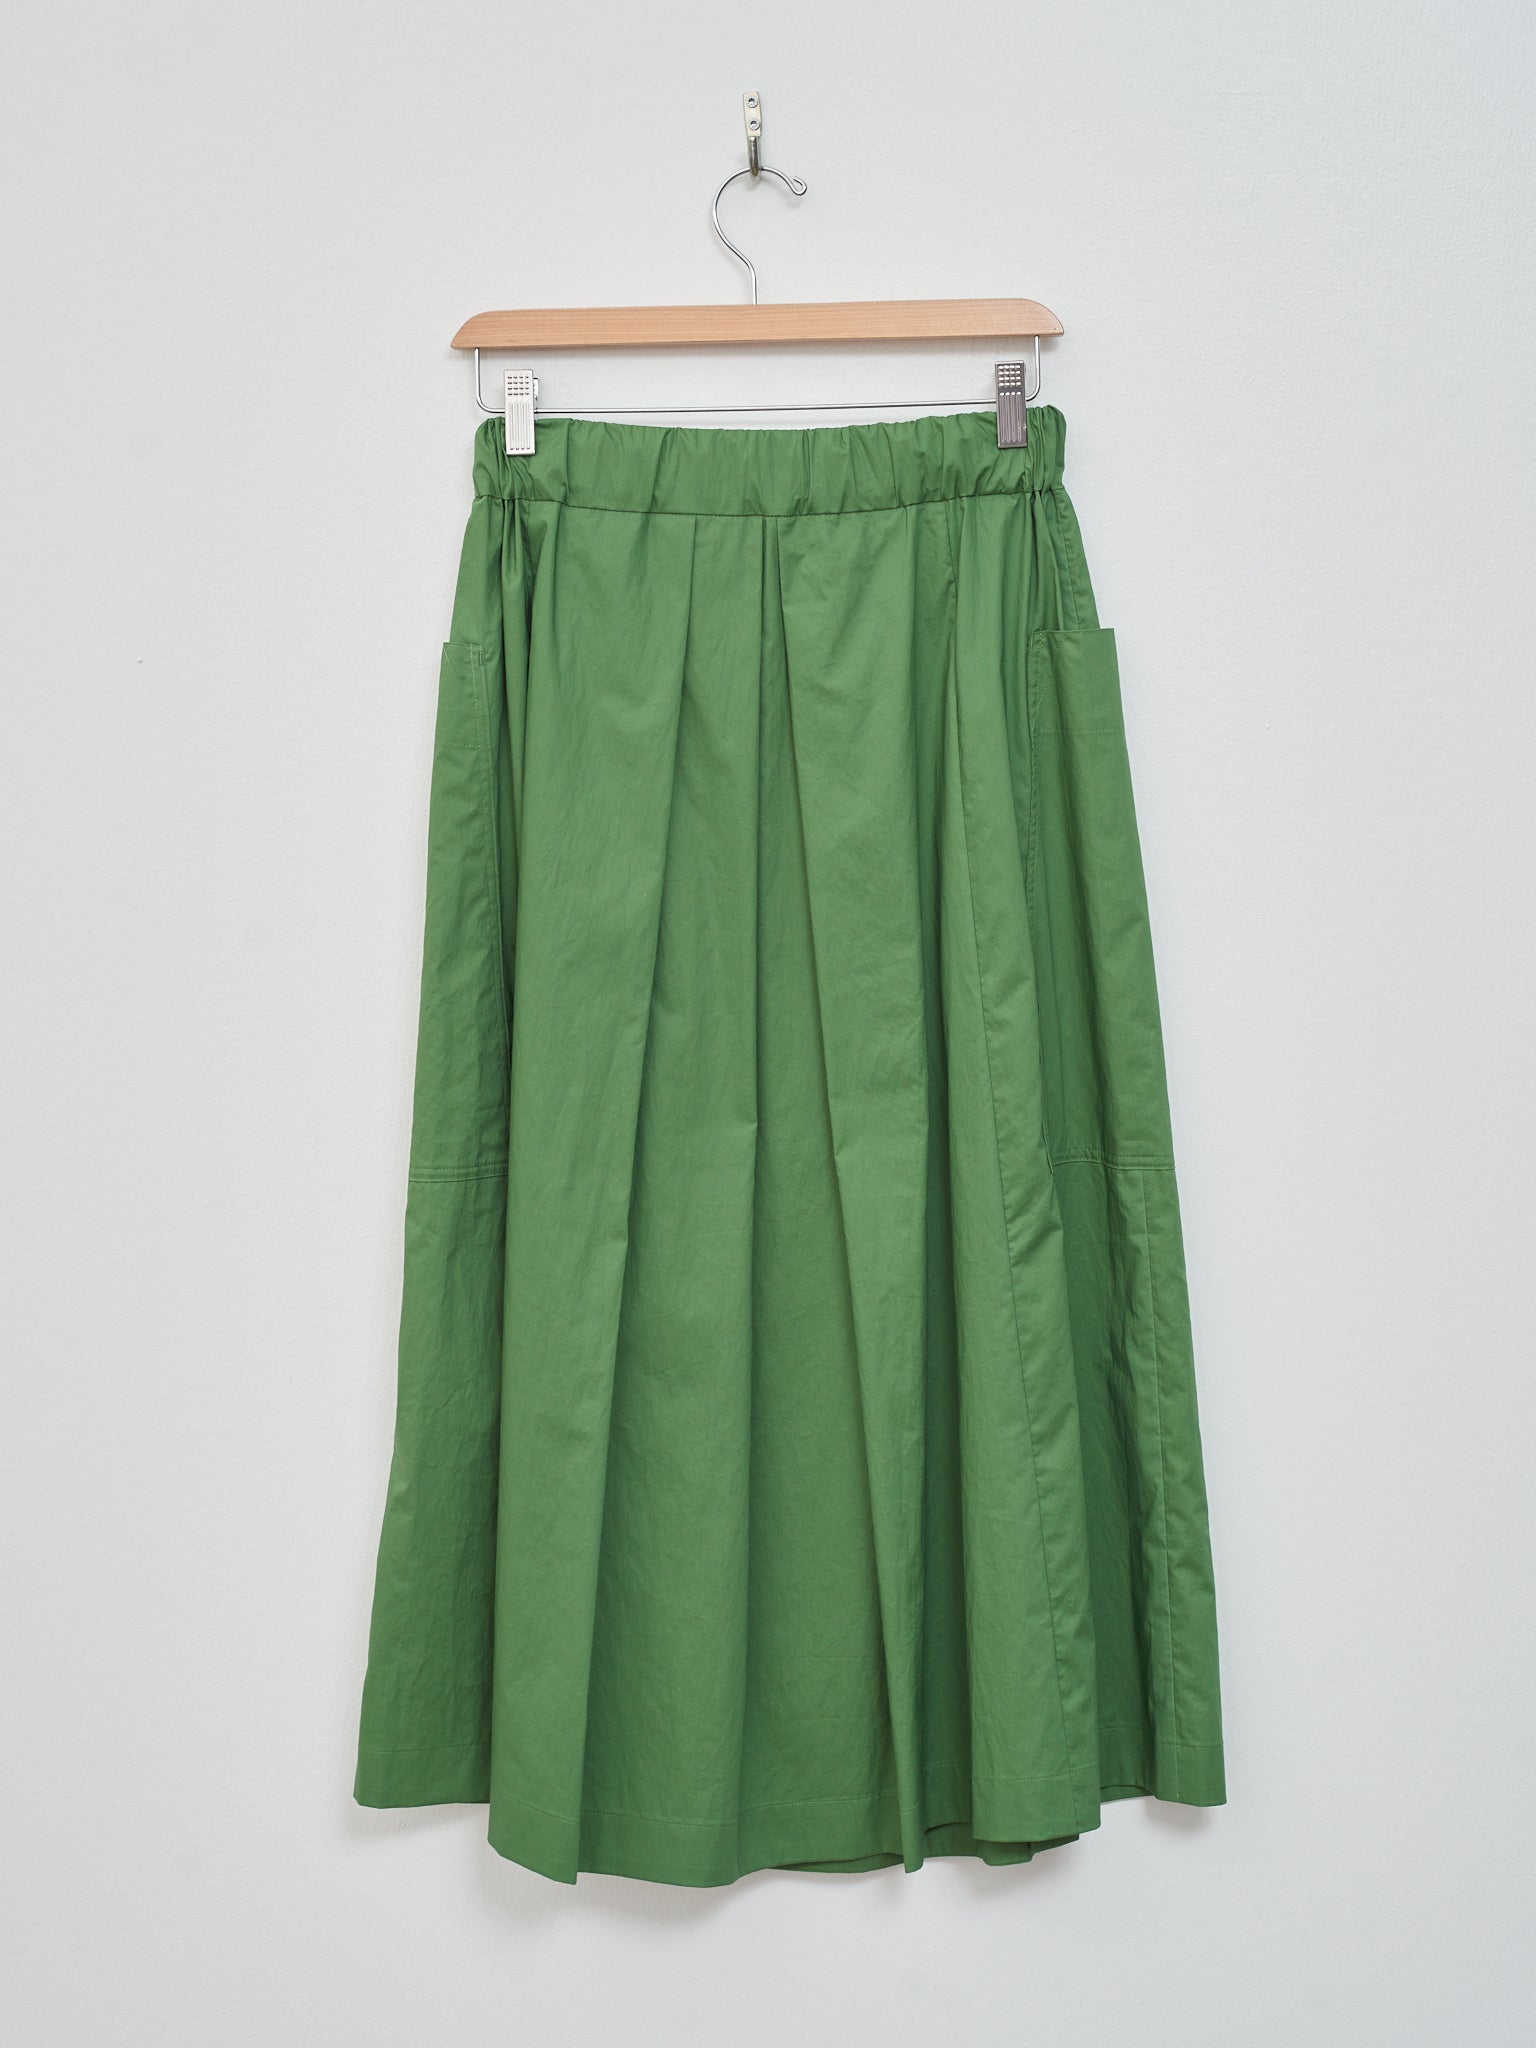 Namu Shop - Nicholson & Nicholson Kanon Poplin Skirt - Green